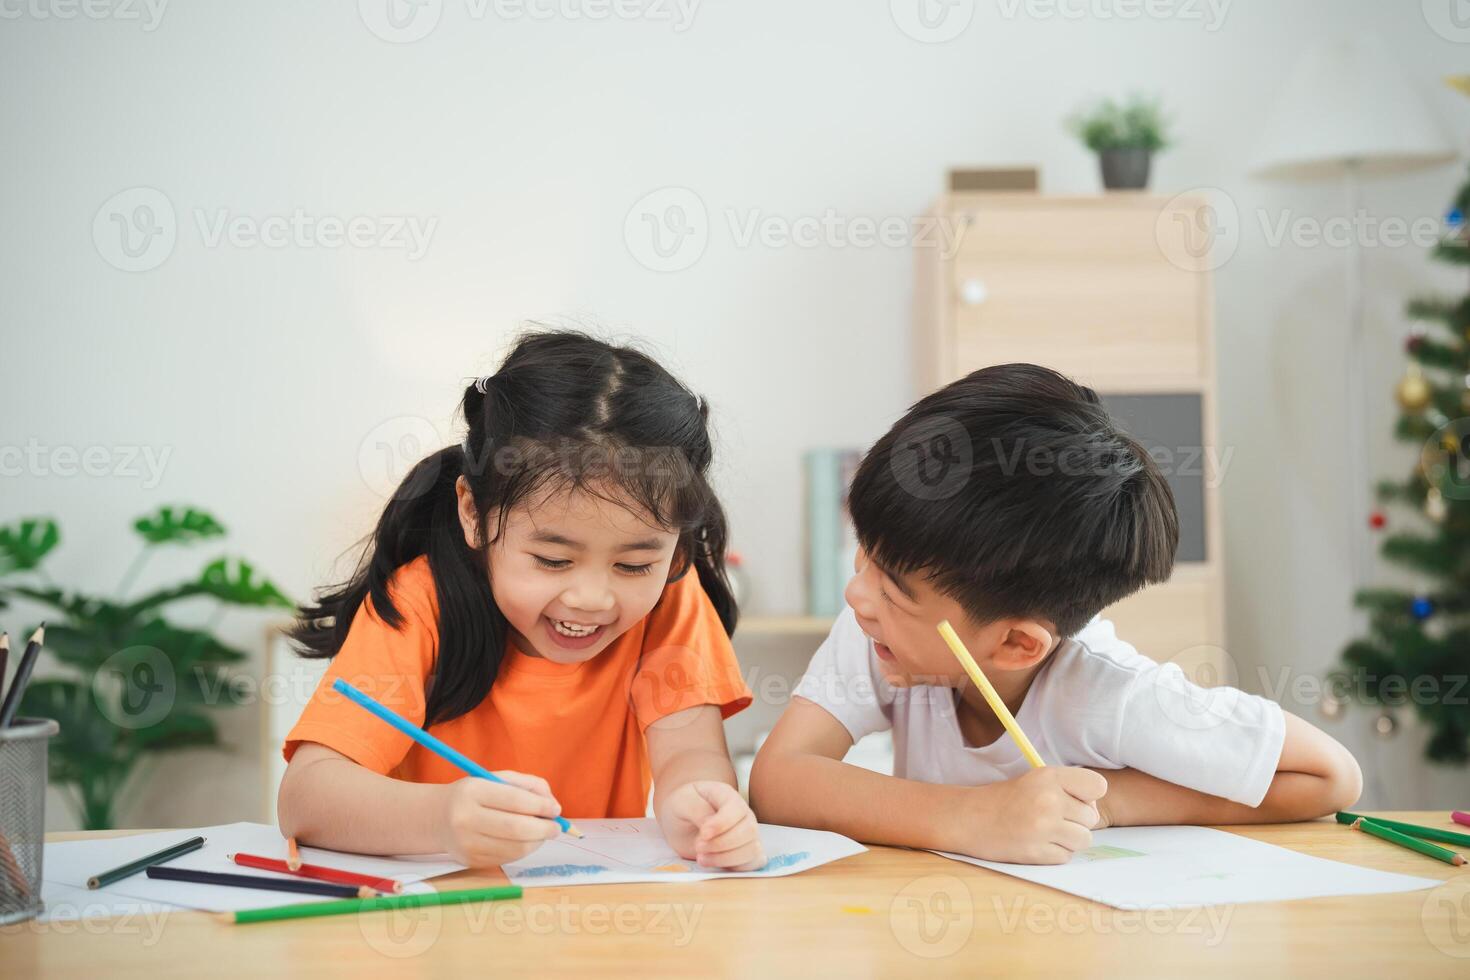 zwei Kinder sind Sitzung beim ein Tisch, Zeichnung und lächelnd. Konzept von Freude und Kreativität, wie das Kinder sind beschäftigt, verlobt im ein Spaß Aktivität zusammen foto